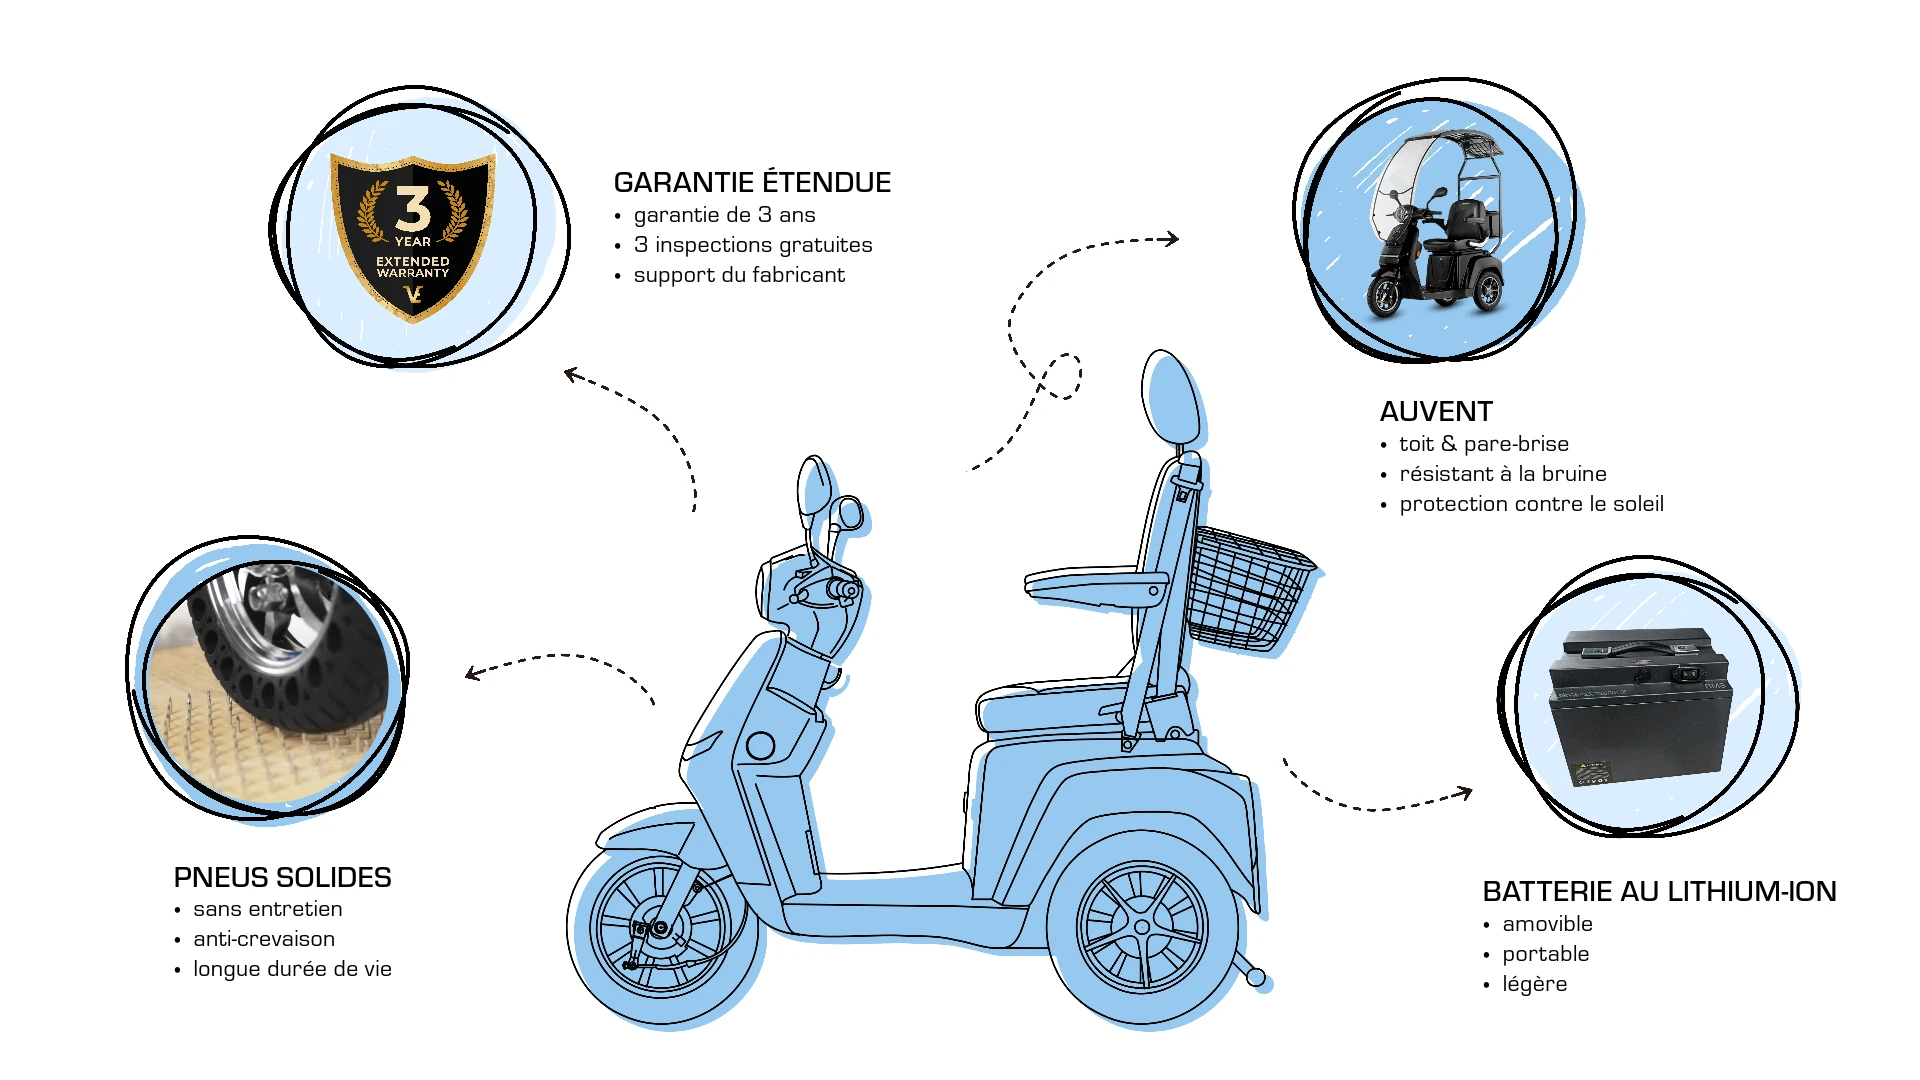 Veleco TURRIS avec siège capitaine extras, améliorations, pneus solides pour scooter de mobilité, garantie prolongée, batterie lithium-ion, toit